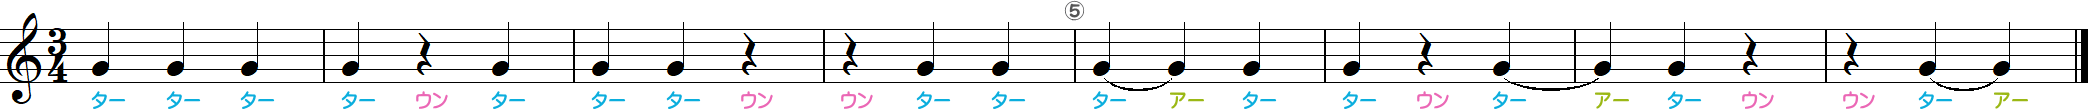 4分の3拍子のリズム練習8小節